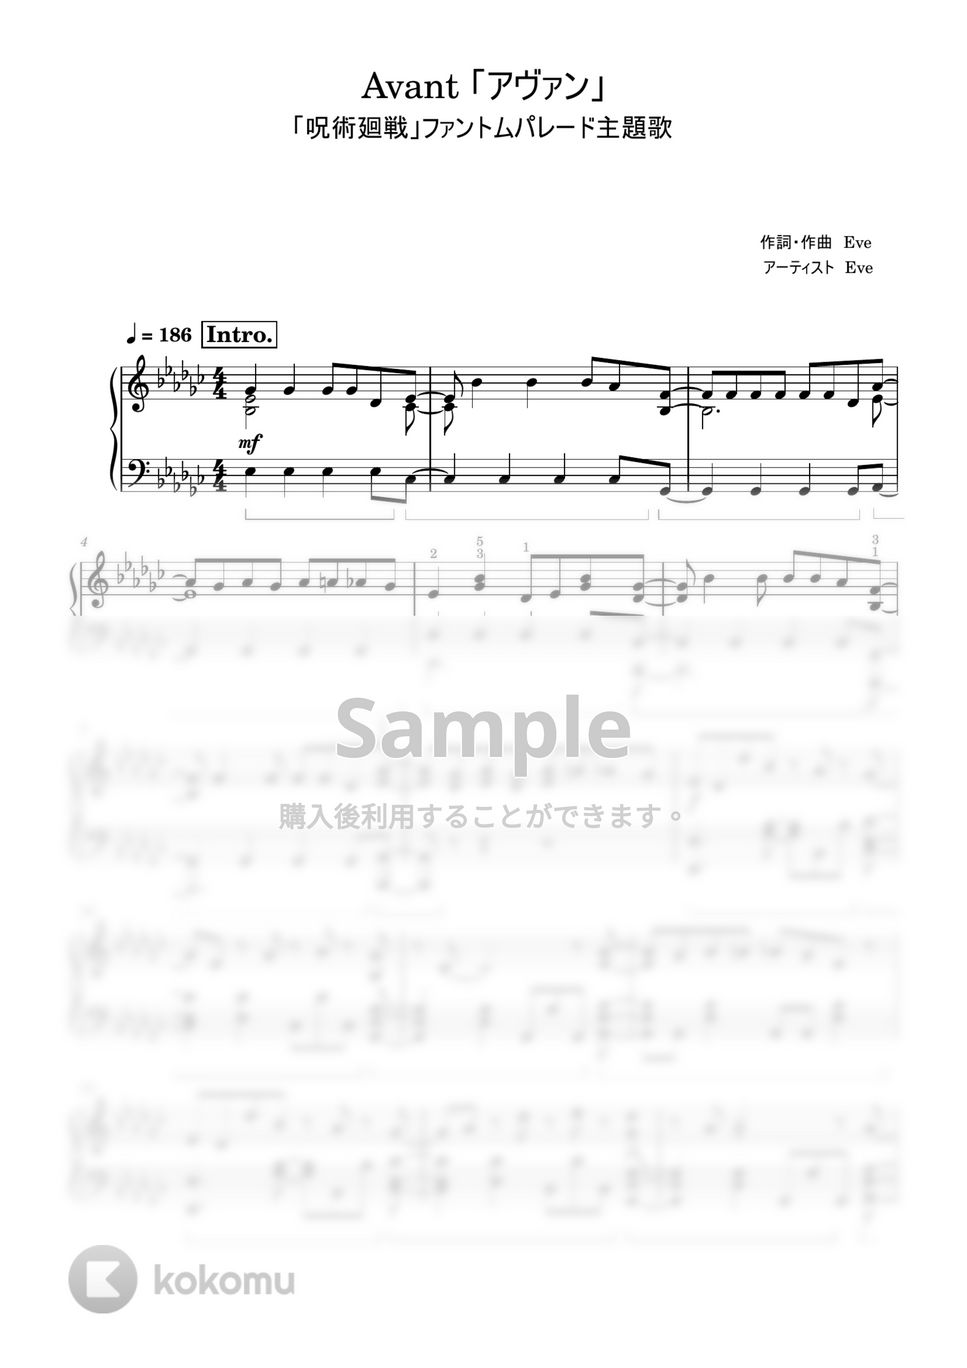 「呪術廻戦」ファントムパレード - アヴァン (上級レベル) by Saori8Piano